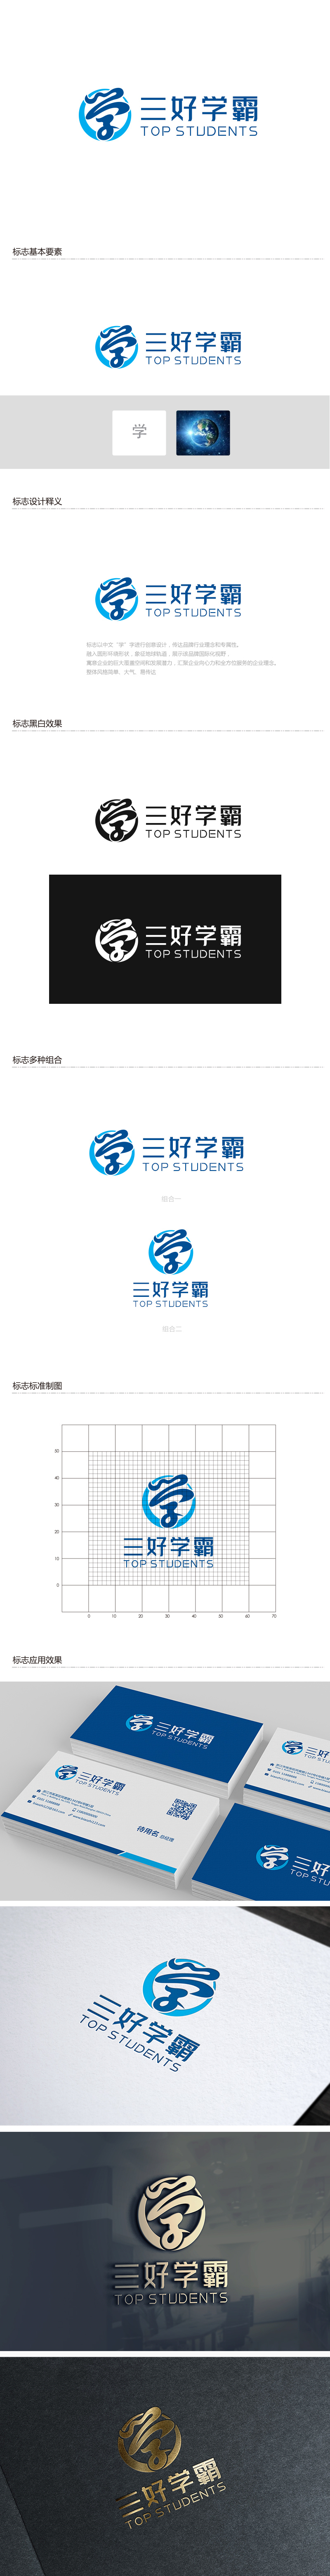 吴晓伟的三好学霸logo设计